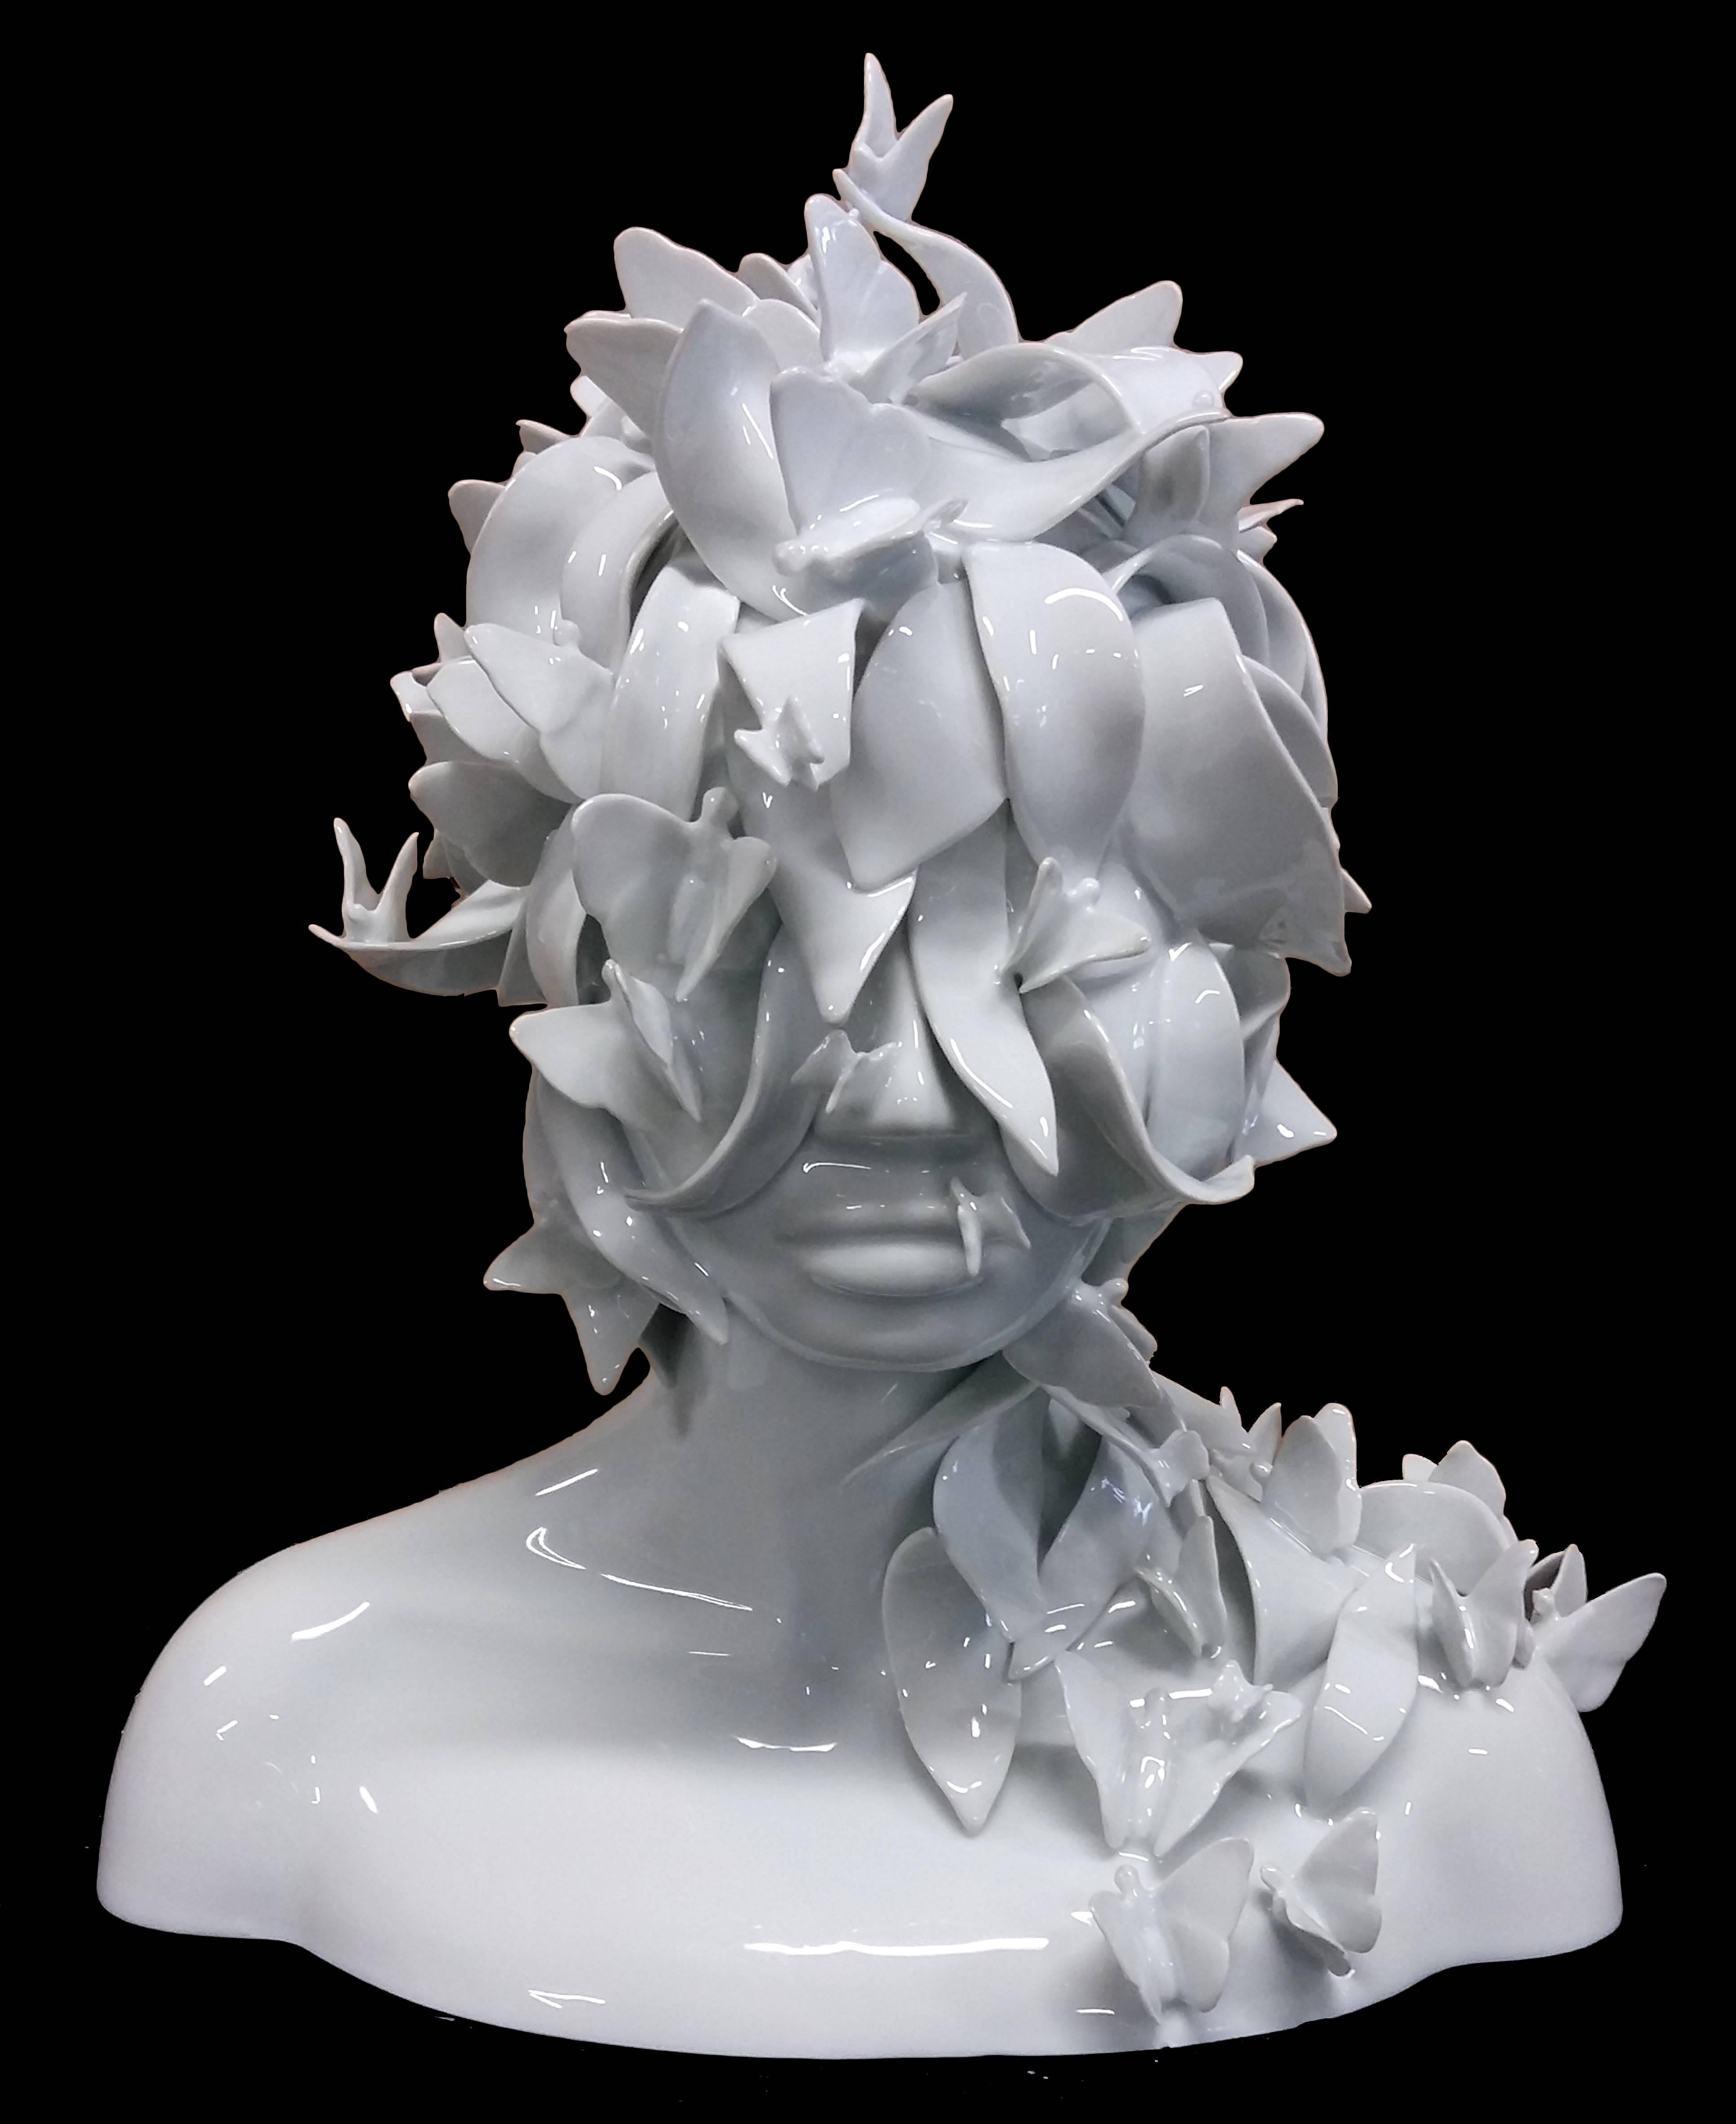 Juliette Clovis Figurative Sculpture - Jungle Bust - Limoges Porcelain - Enamel